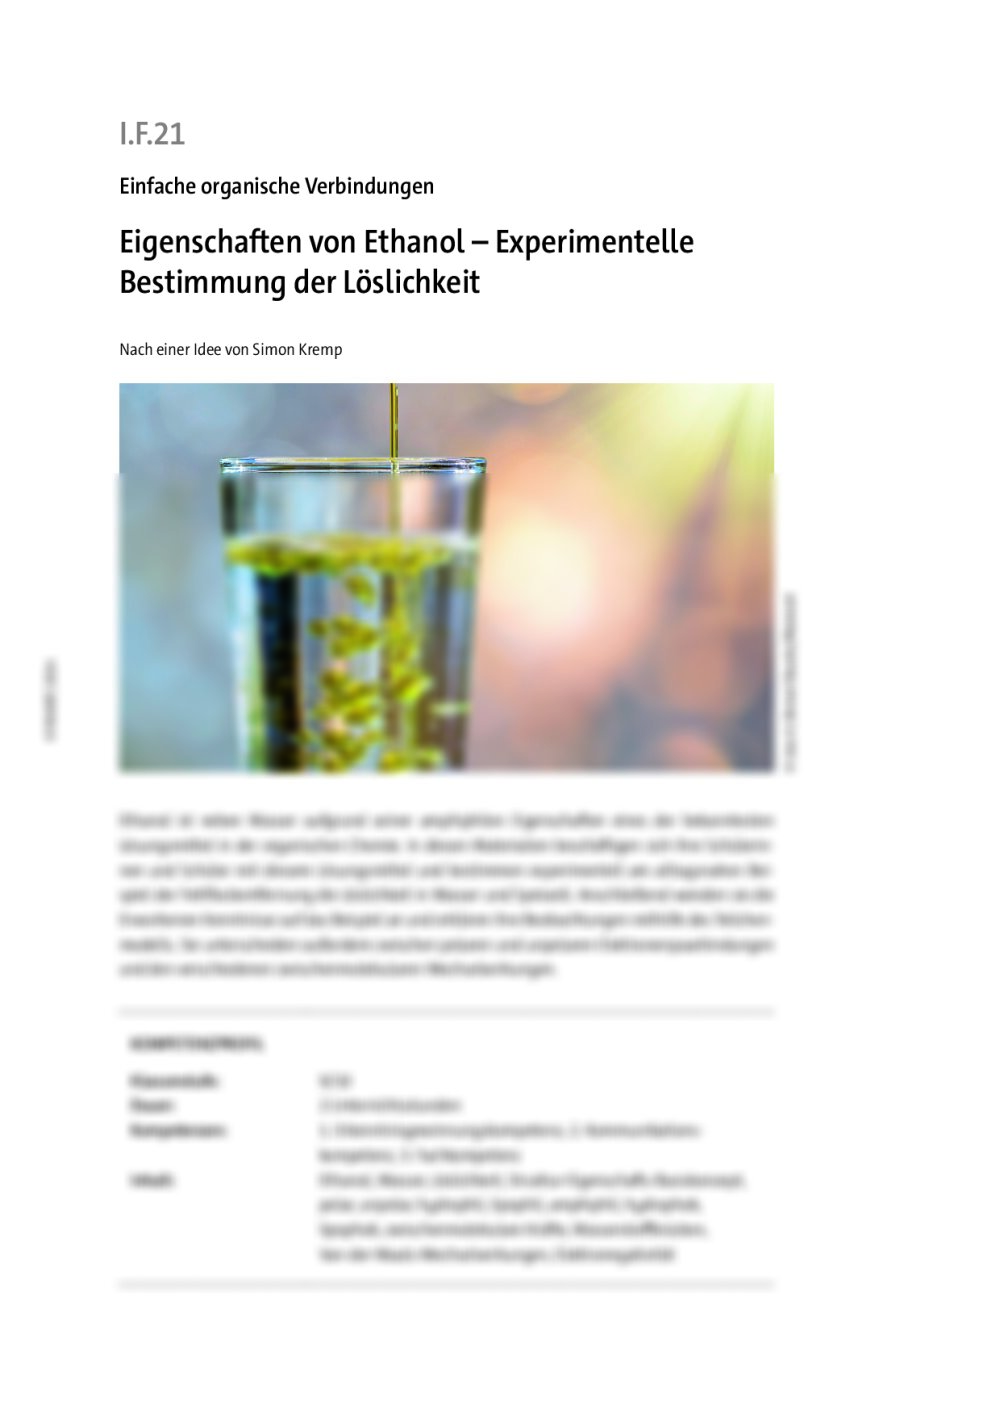 Eigenschaften von Ethanol - Seite 1